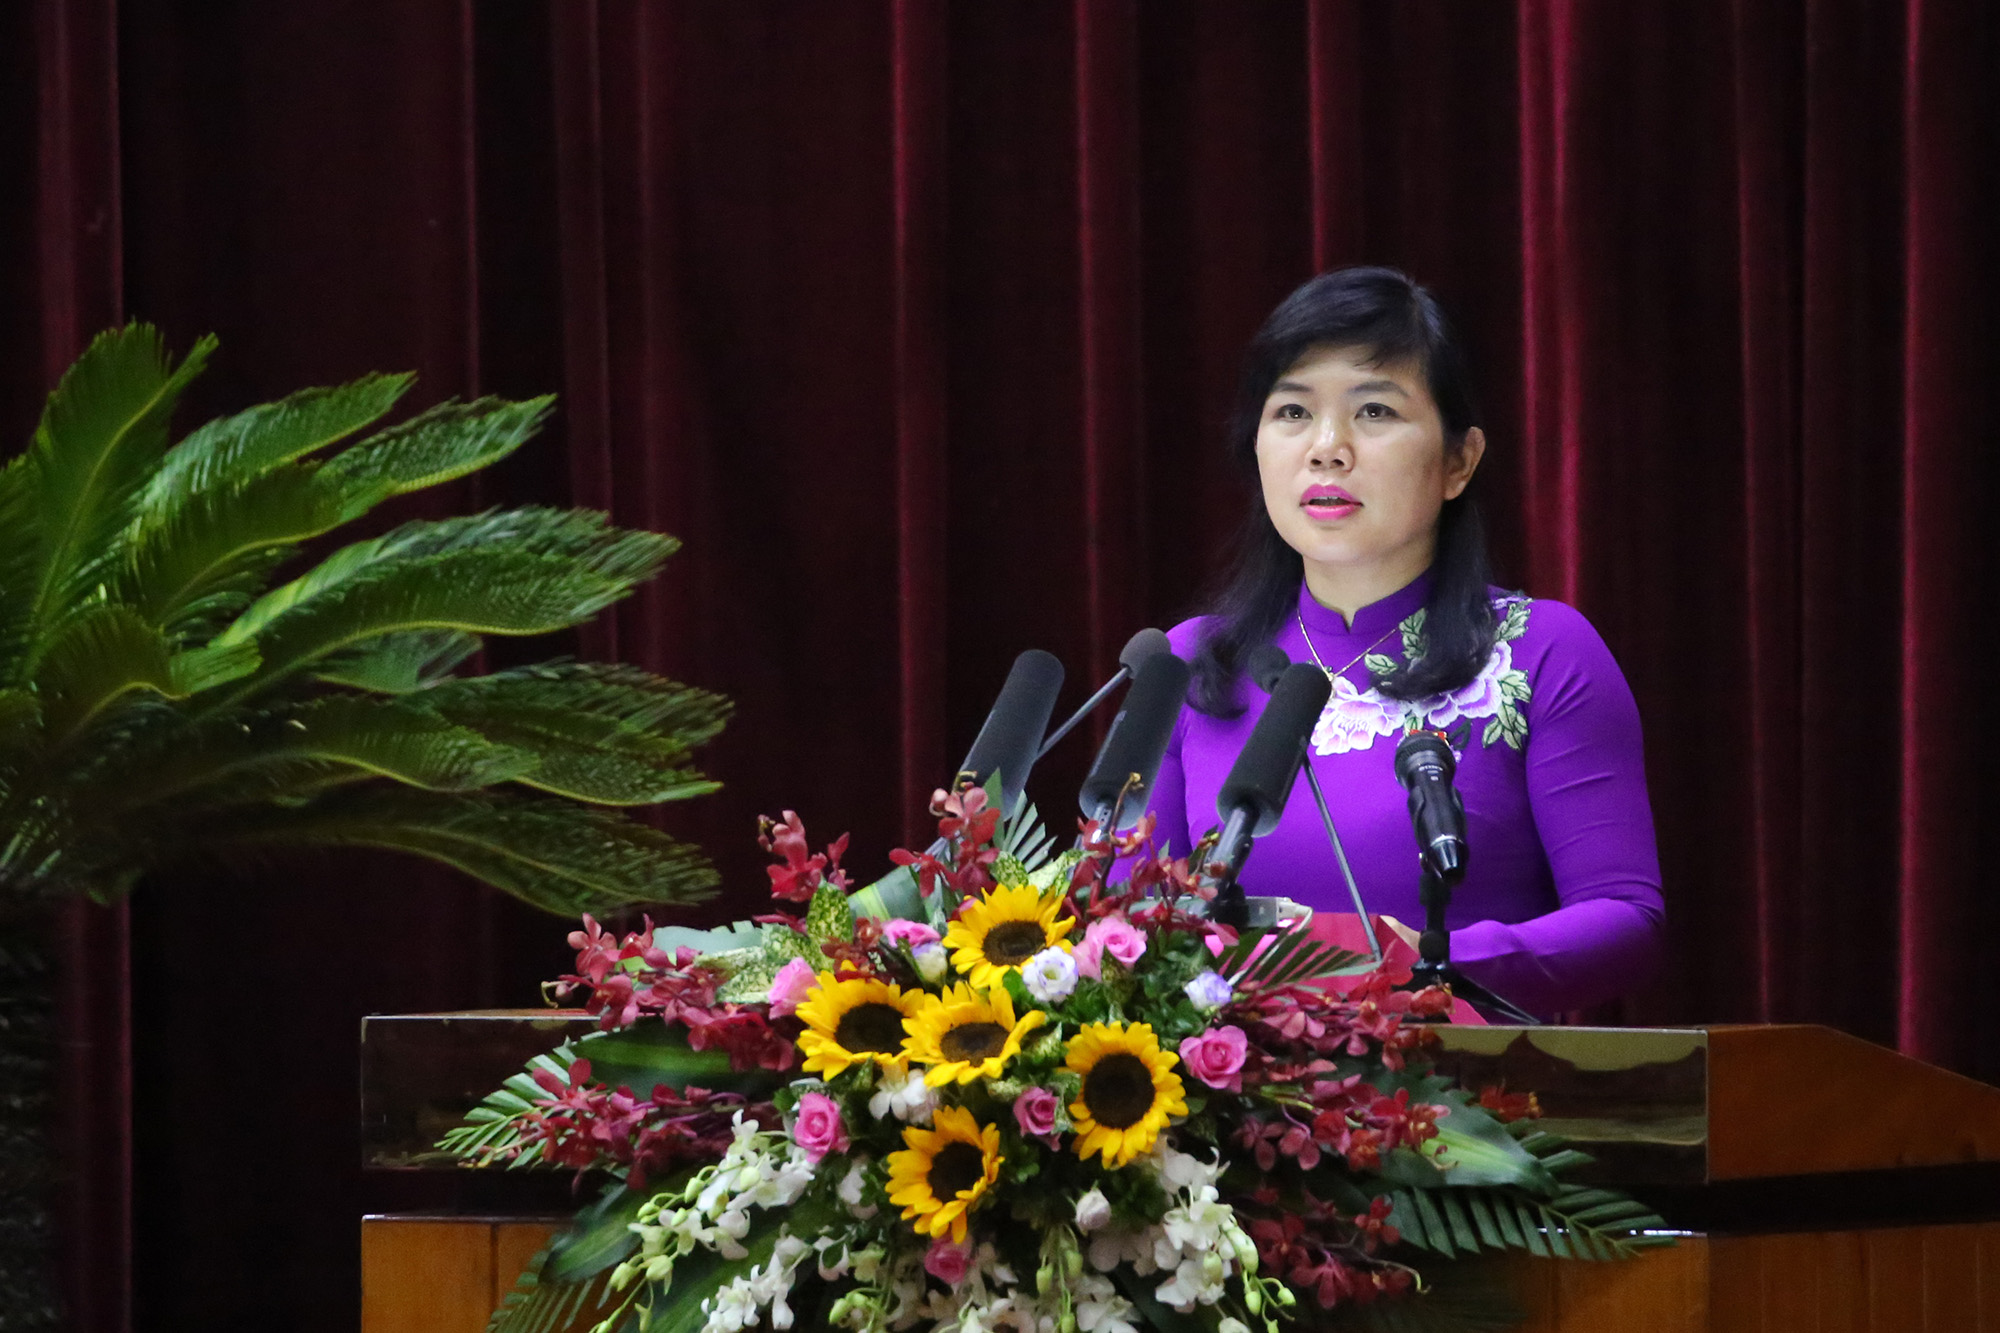 Đại biểu Nguyễn Thị Thu Hà, Tổ đại biểu Đầm Hà, bày tỏ đồng tình, đánh giá cao công tác lãnh đạo, chỉ đạo, điều hành của HĐND, UBND tỉnh trong phát triển kinh tế - xã hội của tỉnh 6 tháng đầu năm.